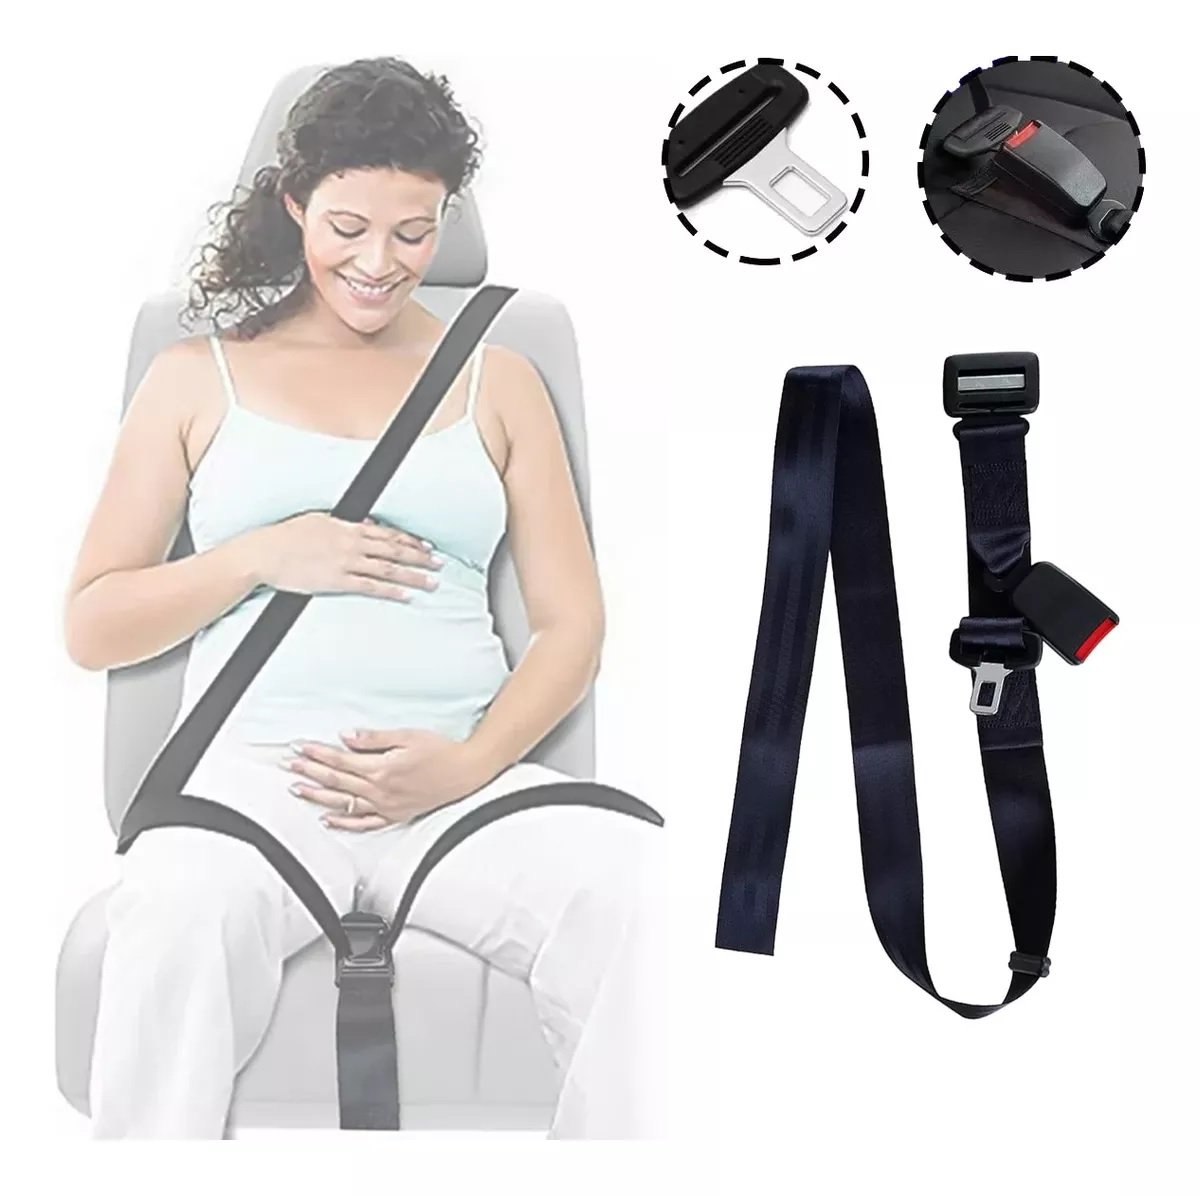 Ajustador de cinturón de seguridad de coche para embarazadas